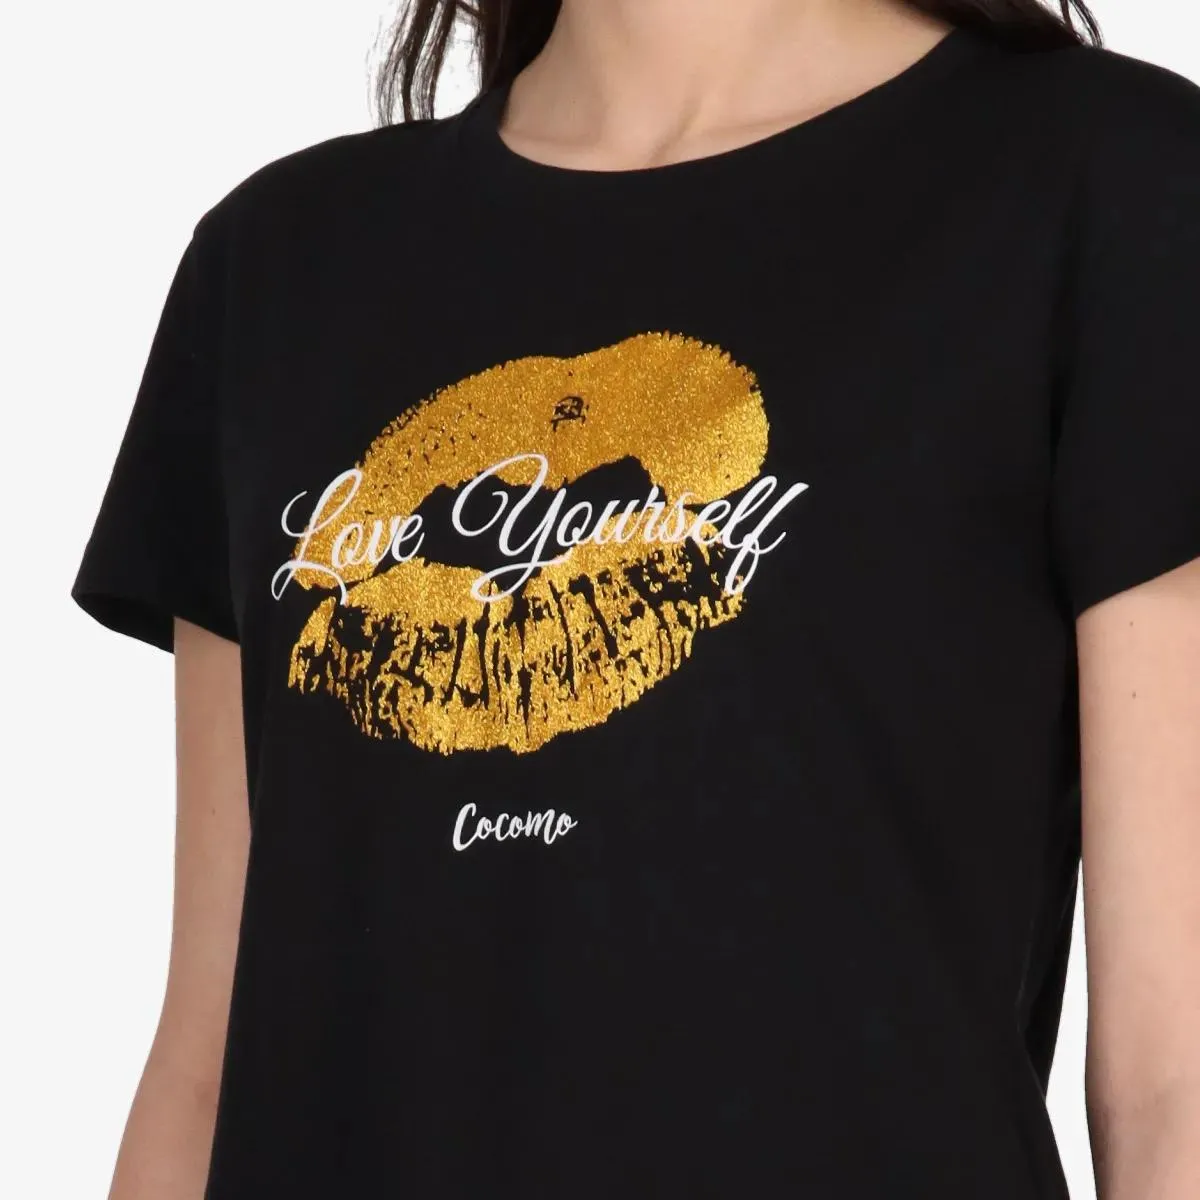 Cocomo T-shirt KISS 